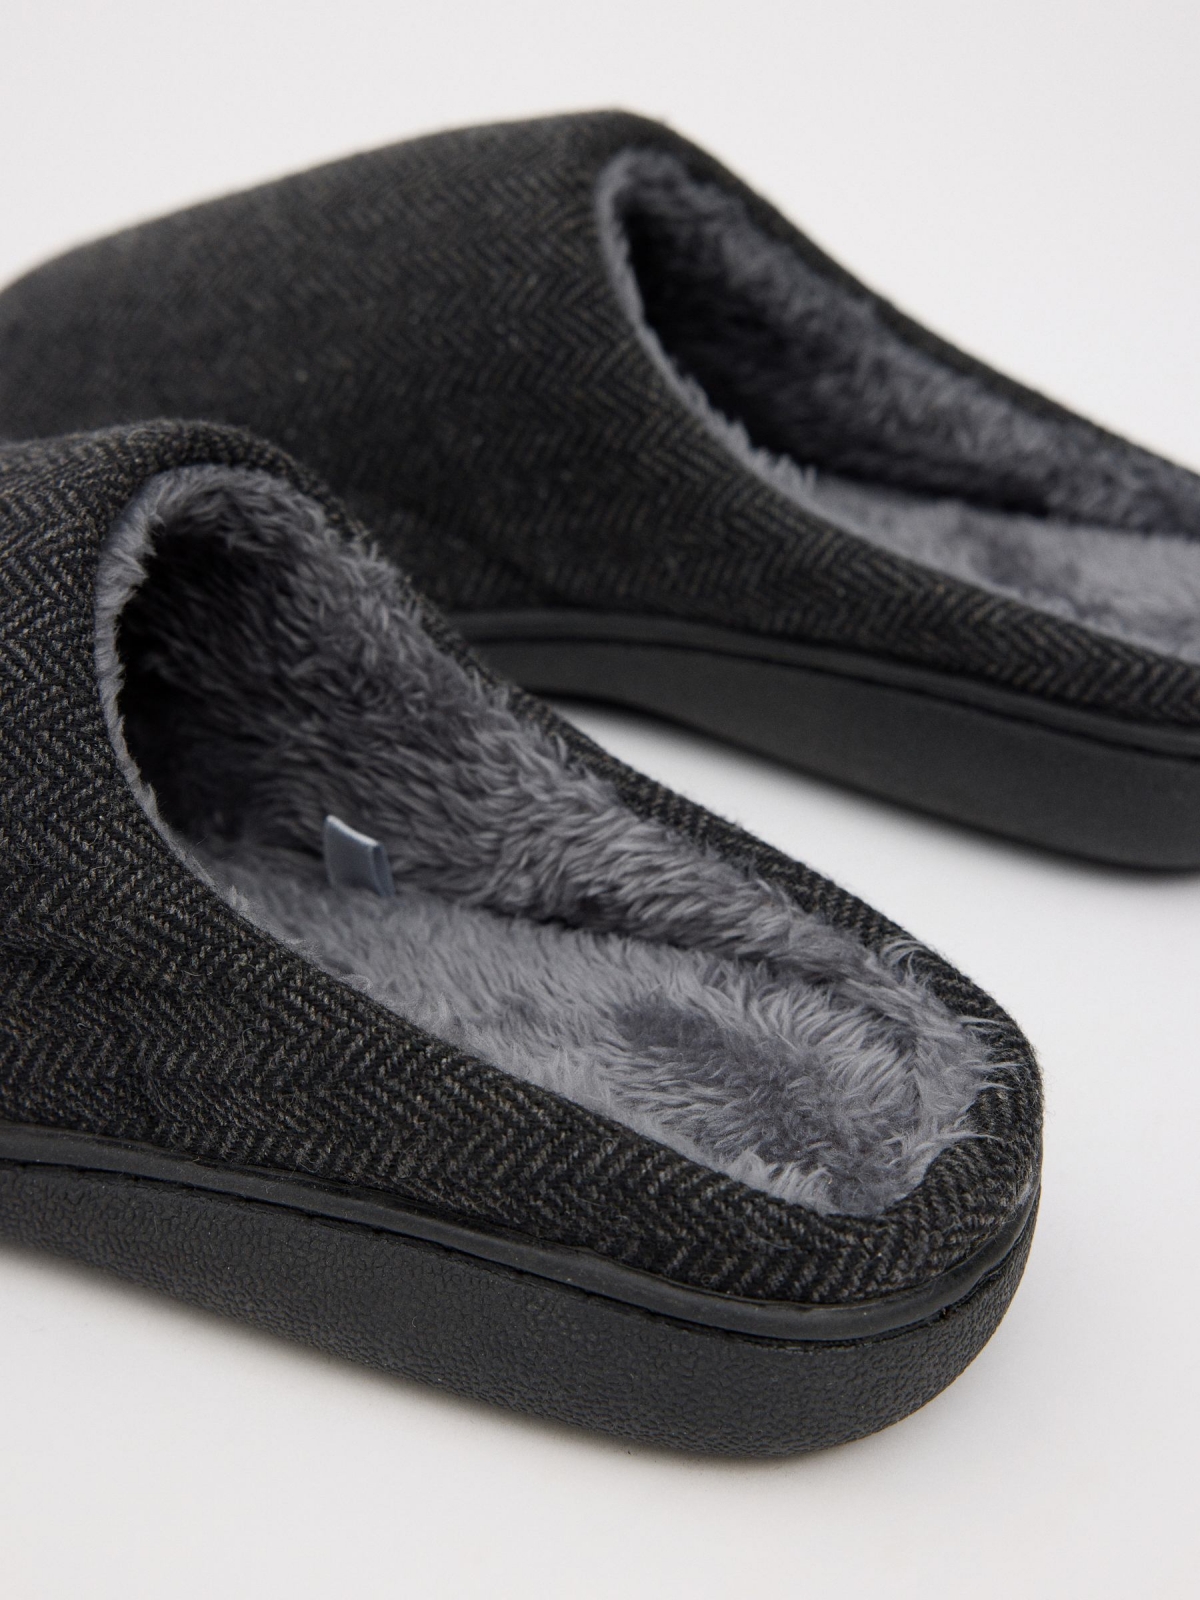 Zapatillas de casa forro pelo gris oscuro vista detalle